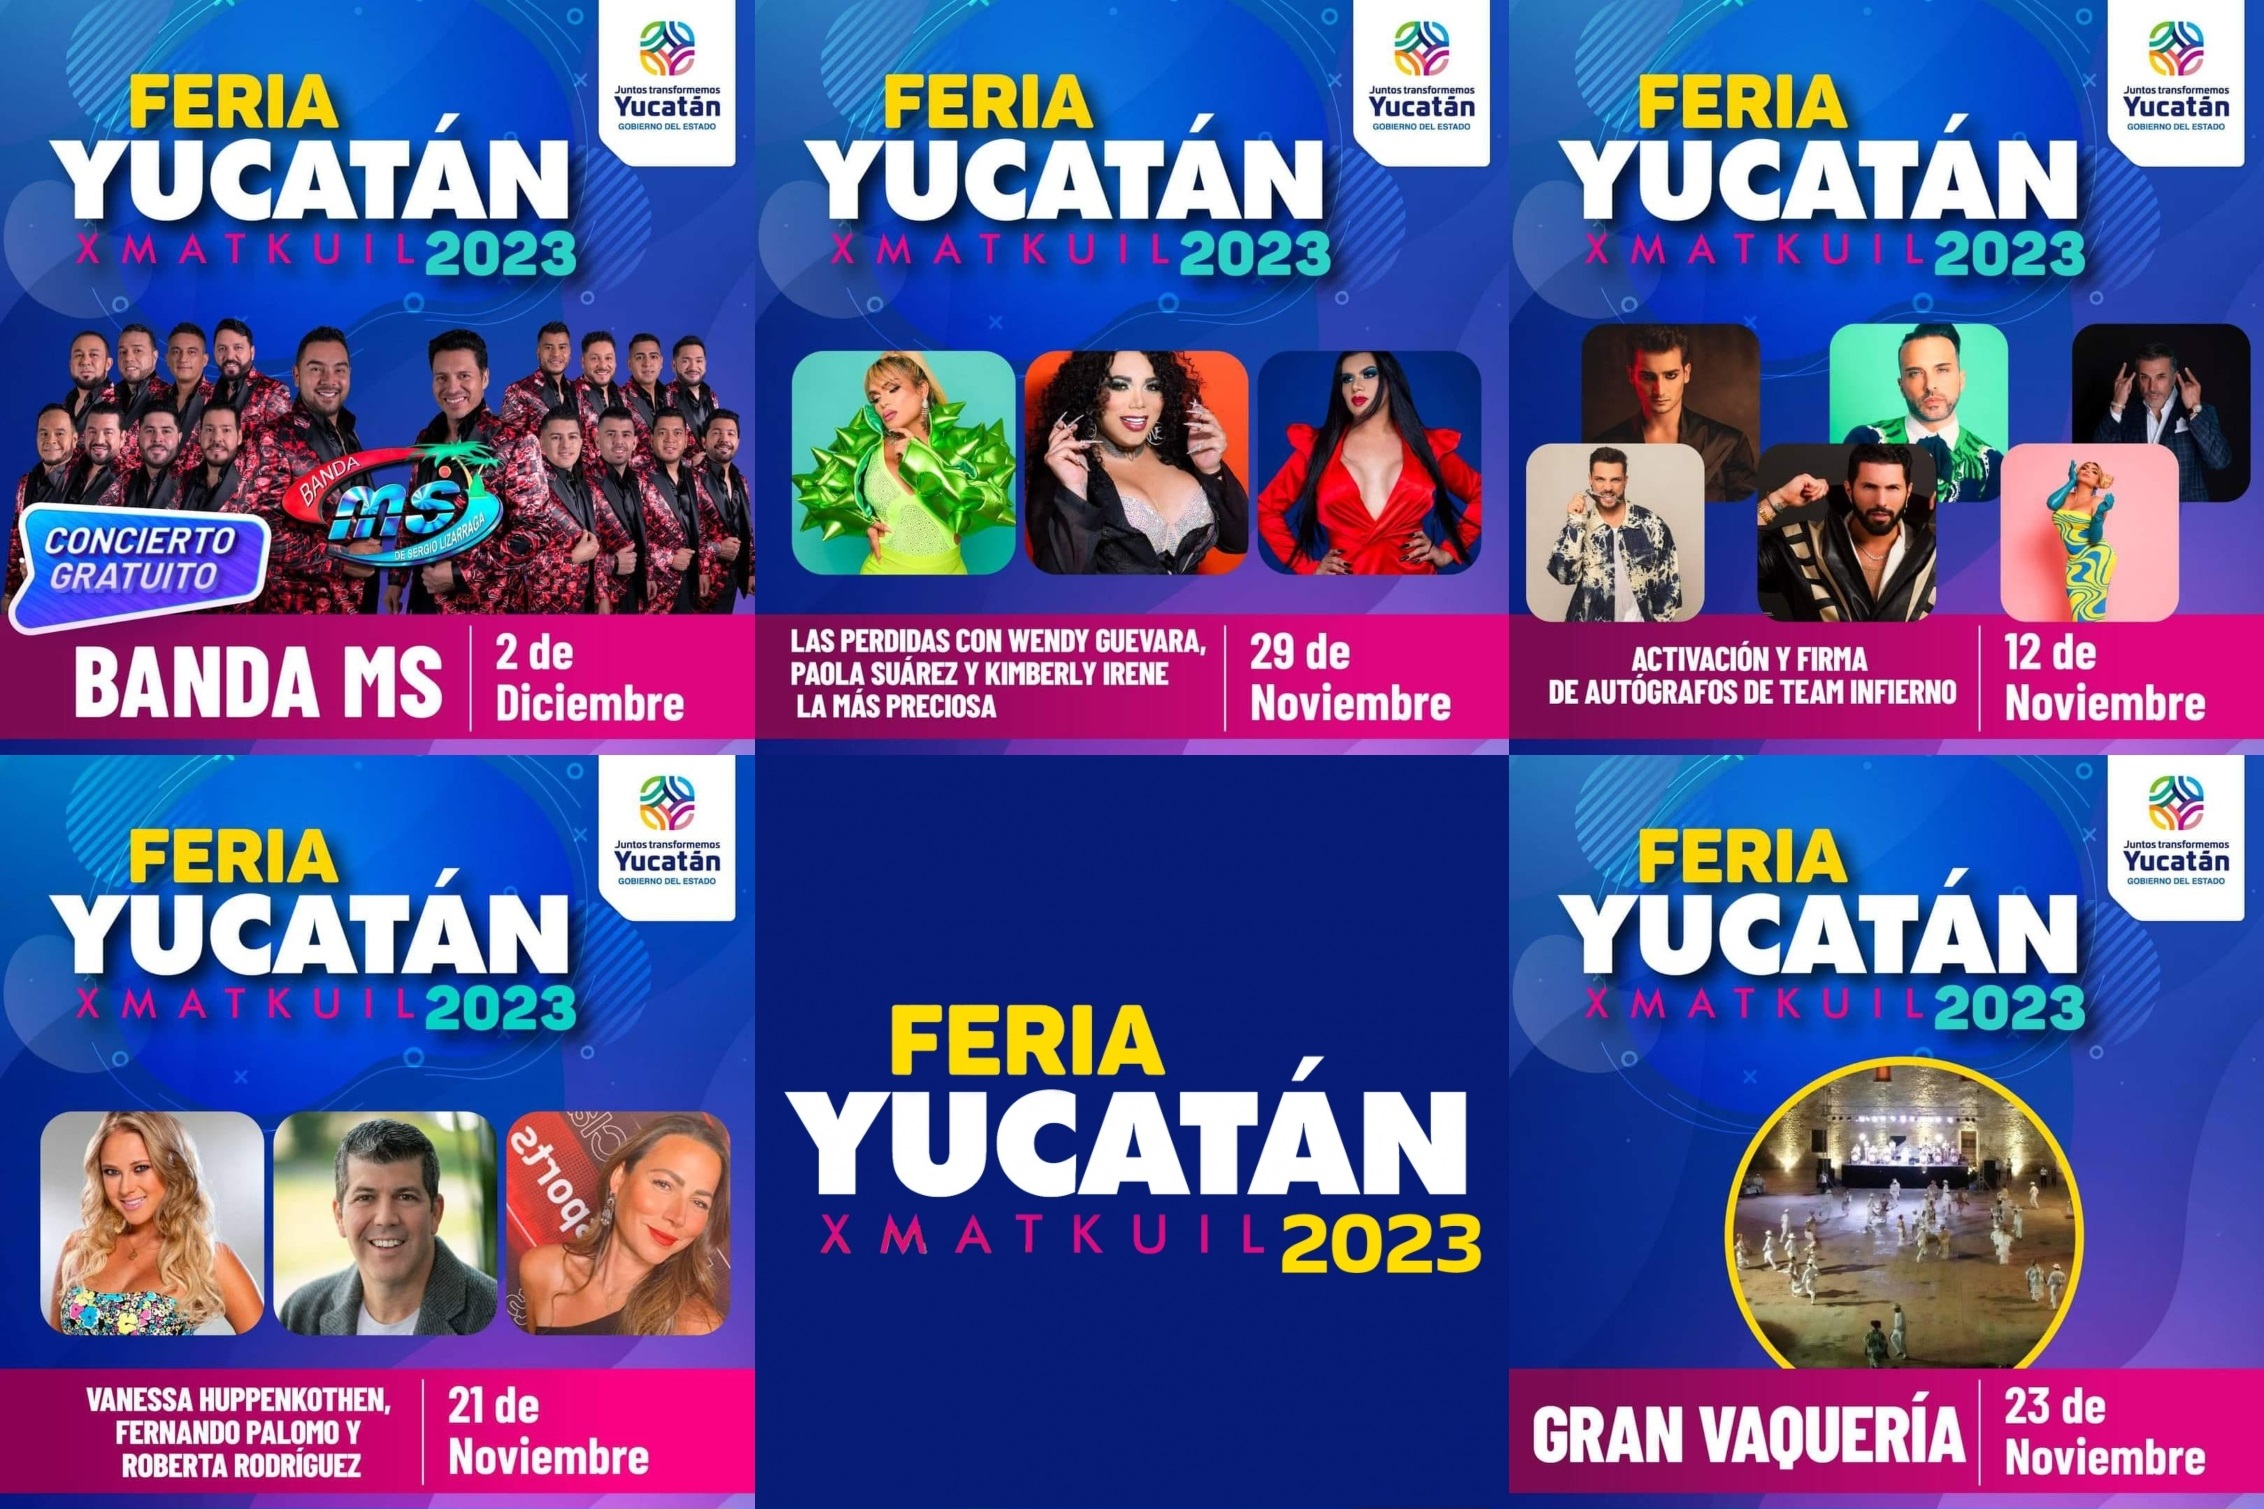 Alegría y fiesta en la Feria Yucatán Xmatkuil 2023